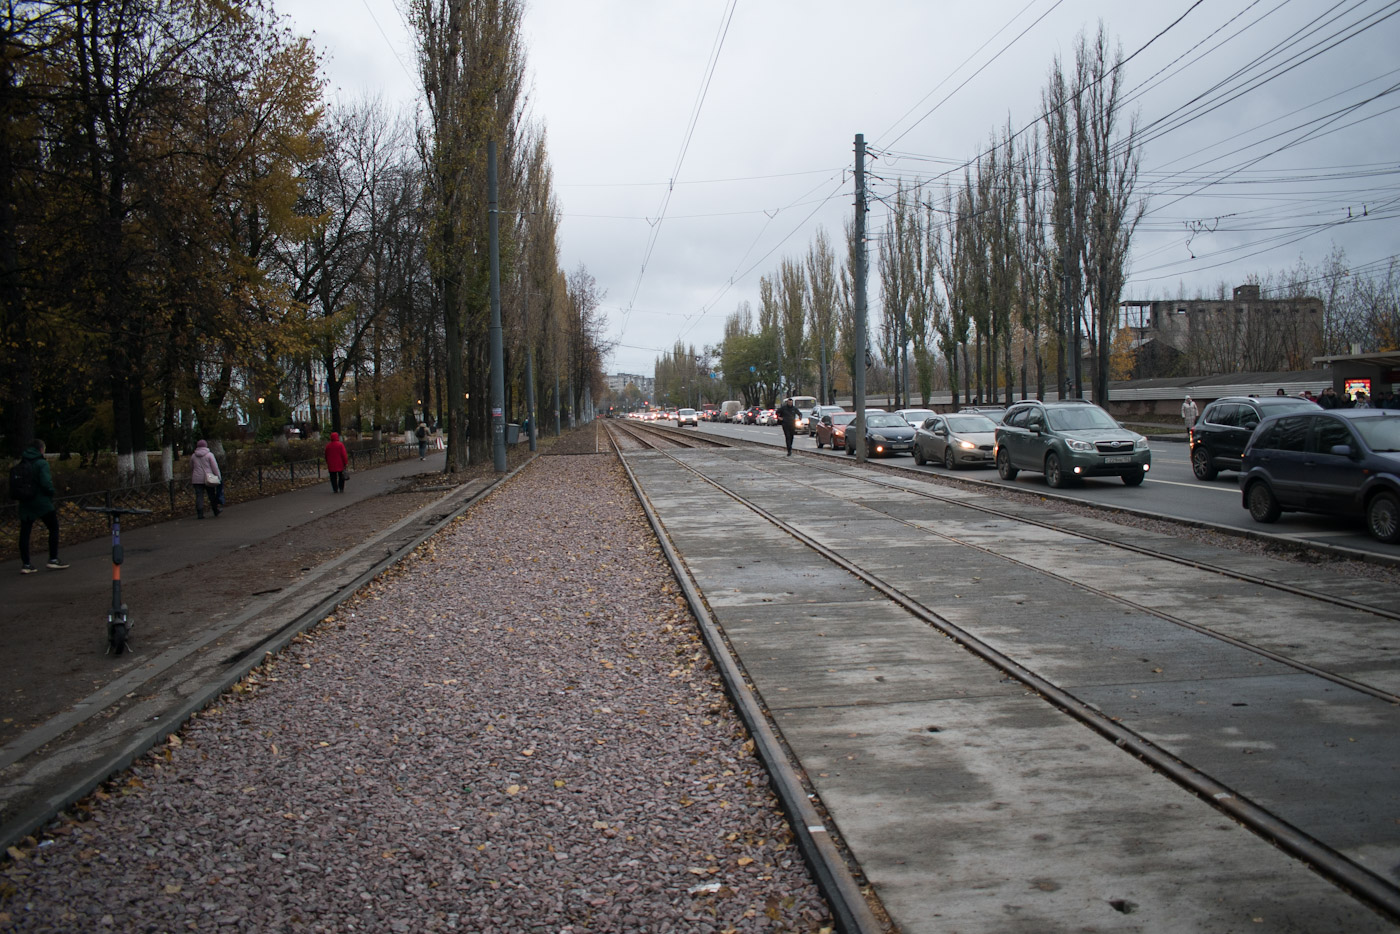 Нижний Новгород — Ремонт трамвайной линии в рамках концессионного соглашения. Этап №1